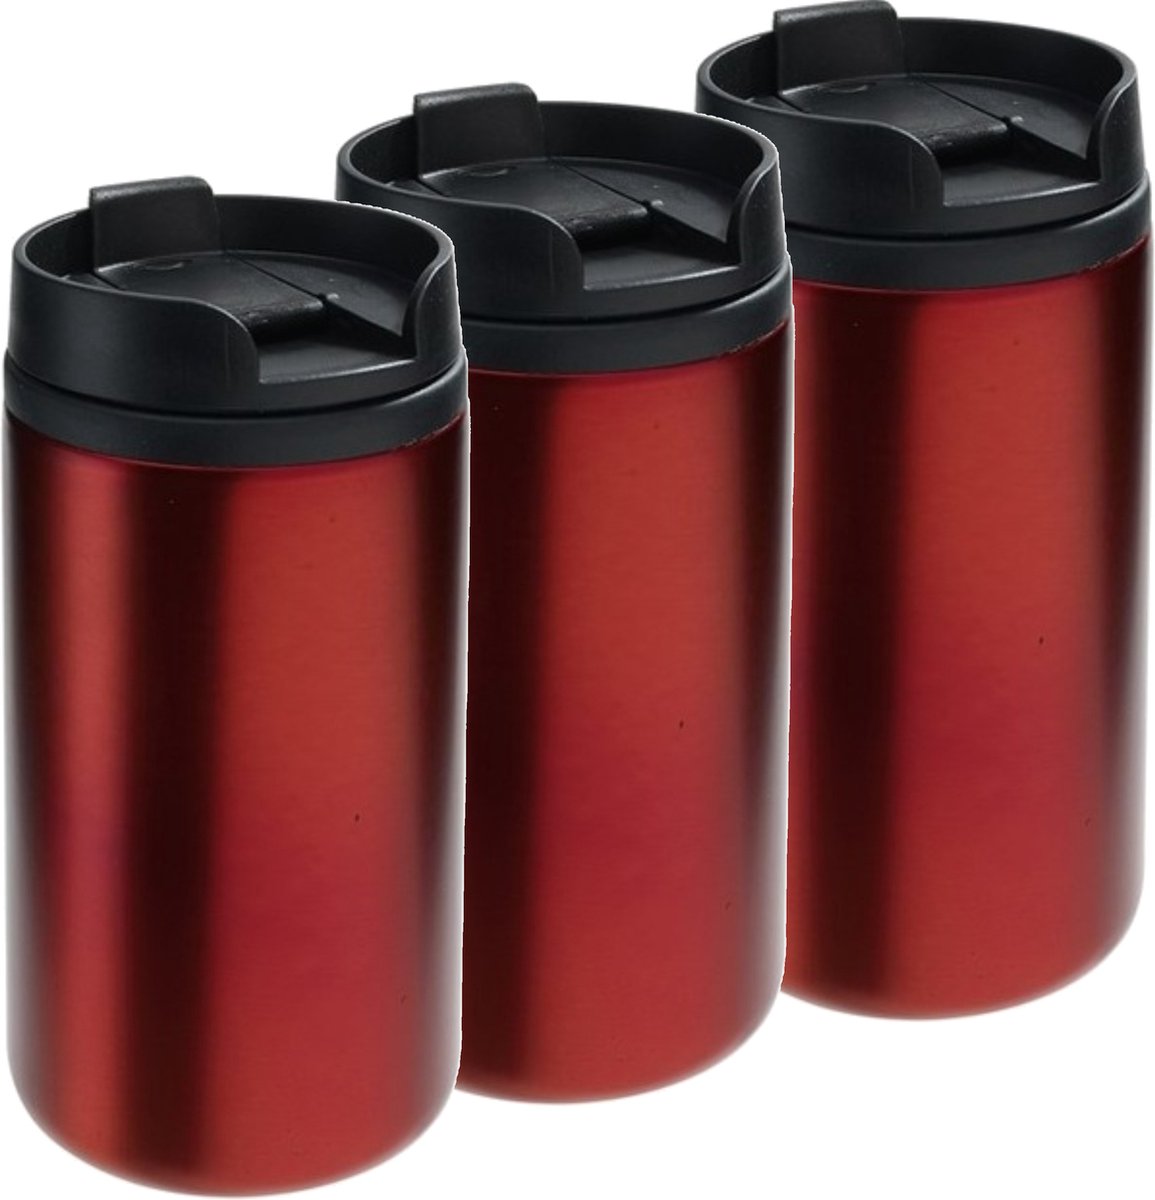 Thermosbeker - metallic rood - 5x stuks - RVS - 250 ml - dubbelwandig met schroefdop